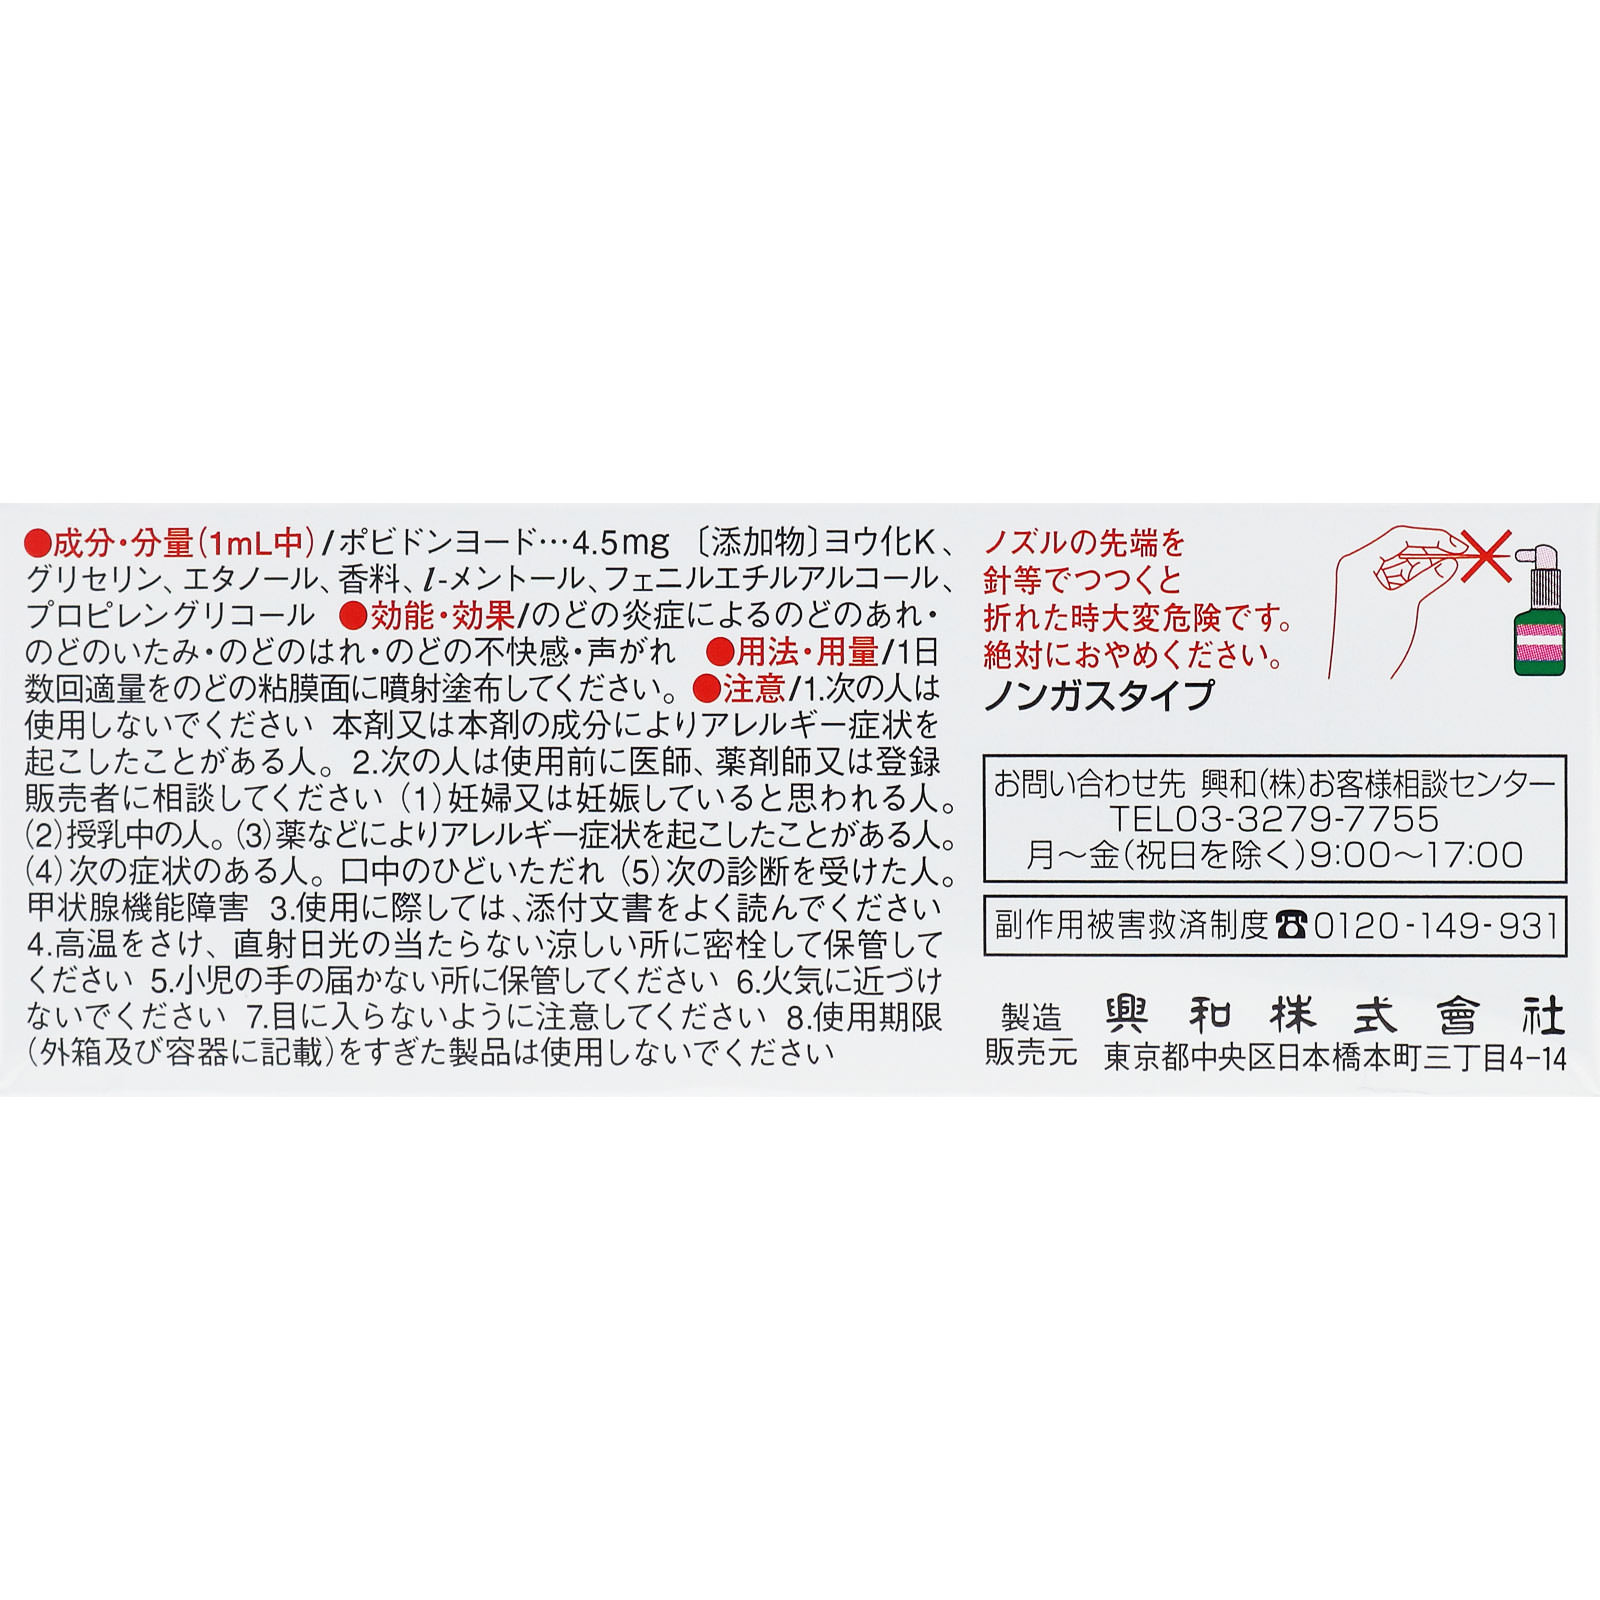 フィニッシュコーワＭ 18mL 【第三類医薬品】: 医薬品・衛生用品 Tomod's ONLINE SHOP